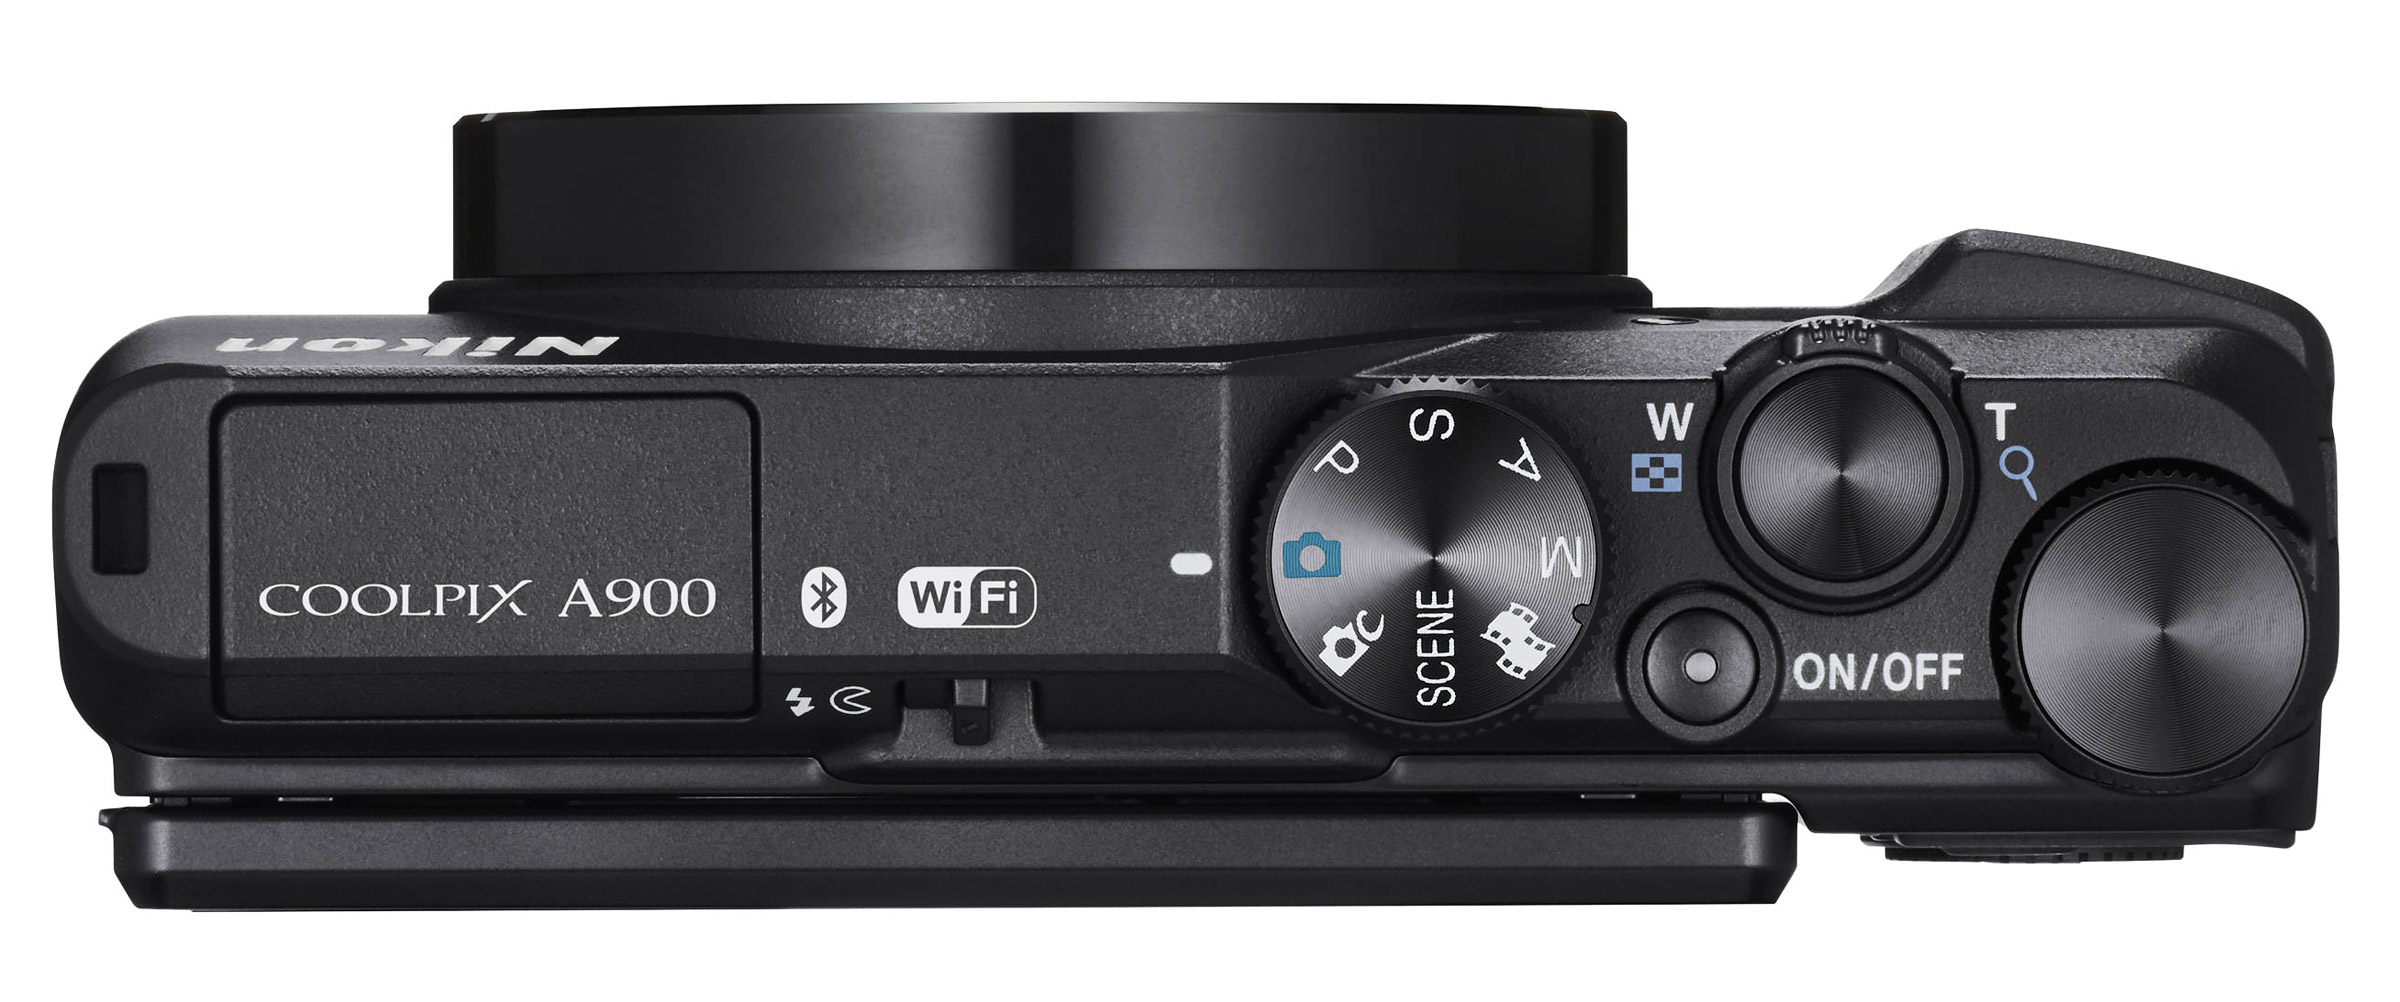 Nikon Coolpix A900 : Caratteristiche e Opinioni | JuzaPhoto